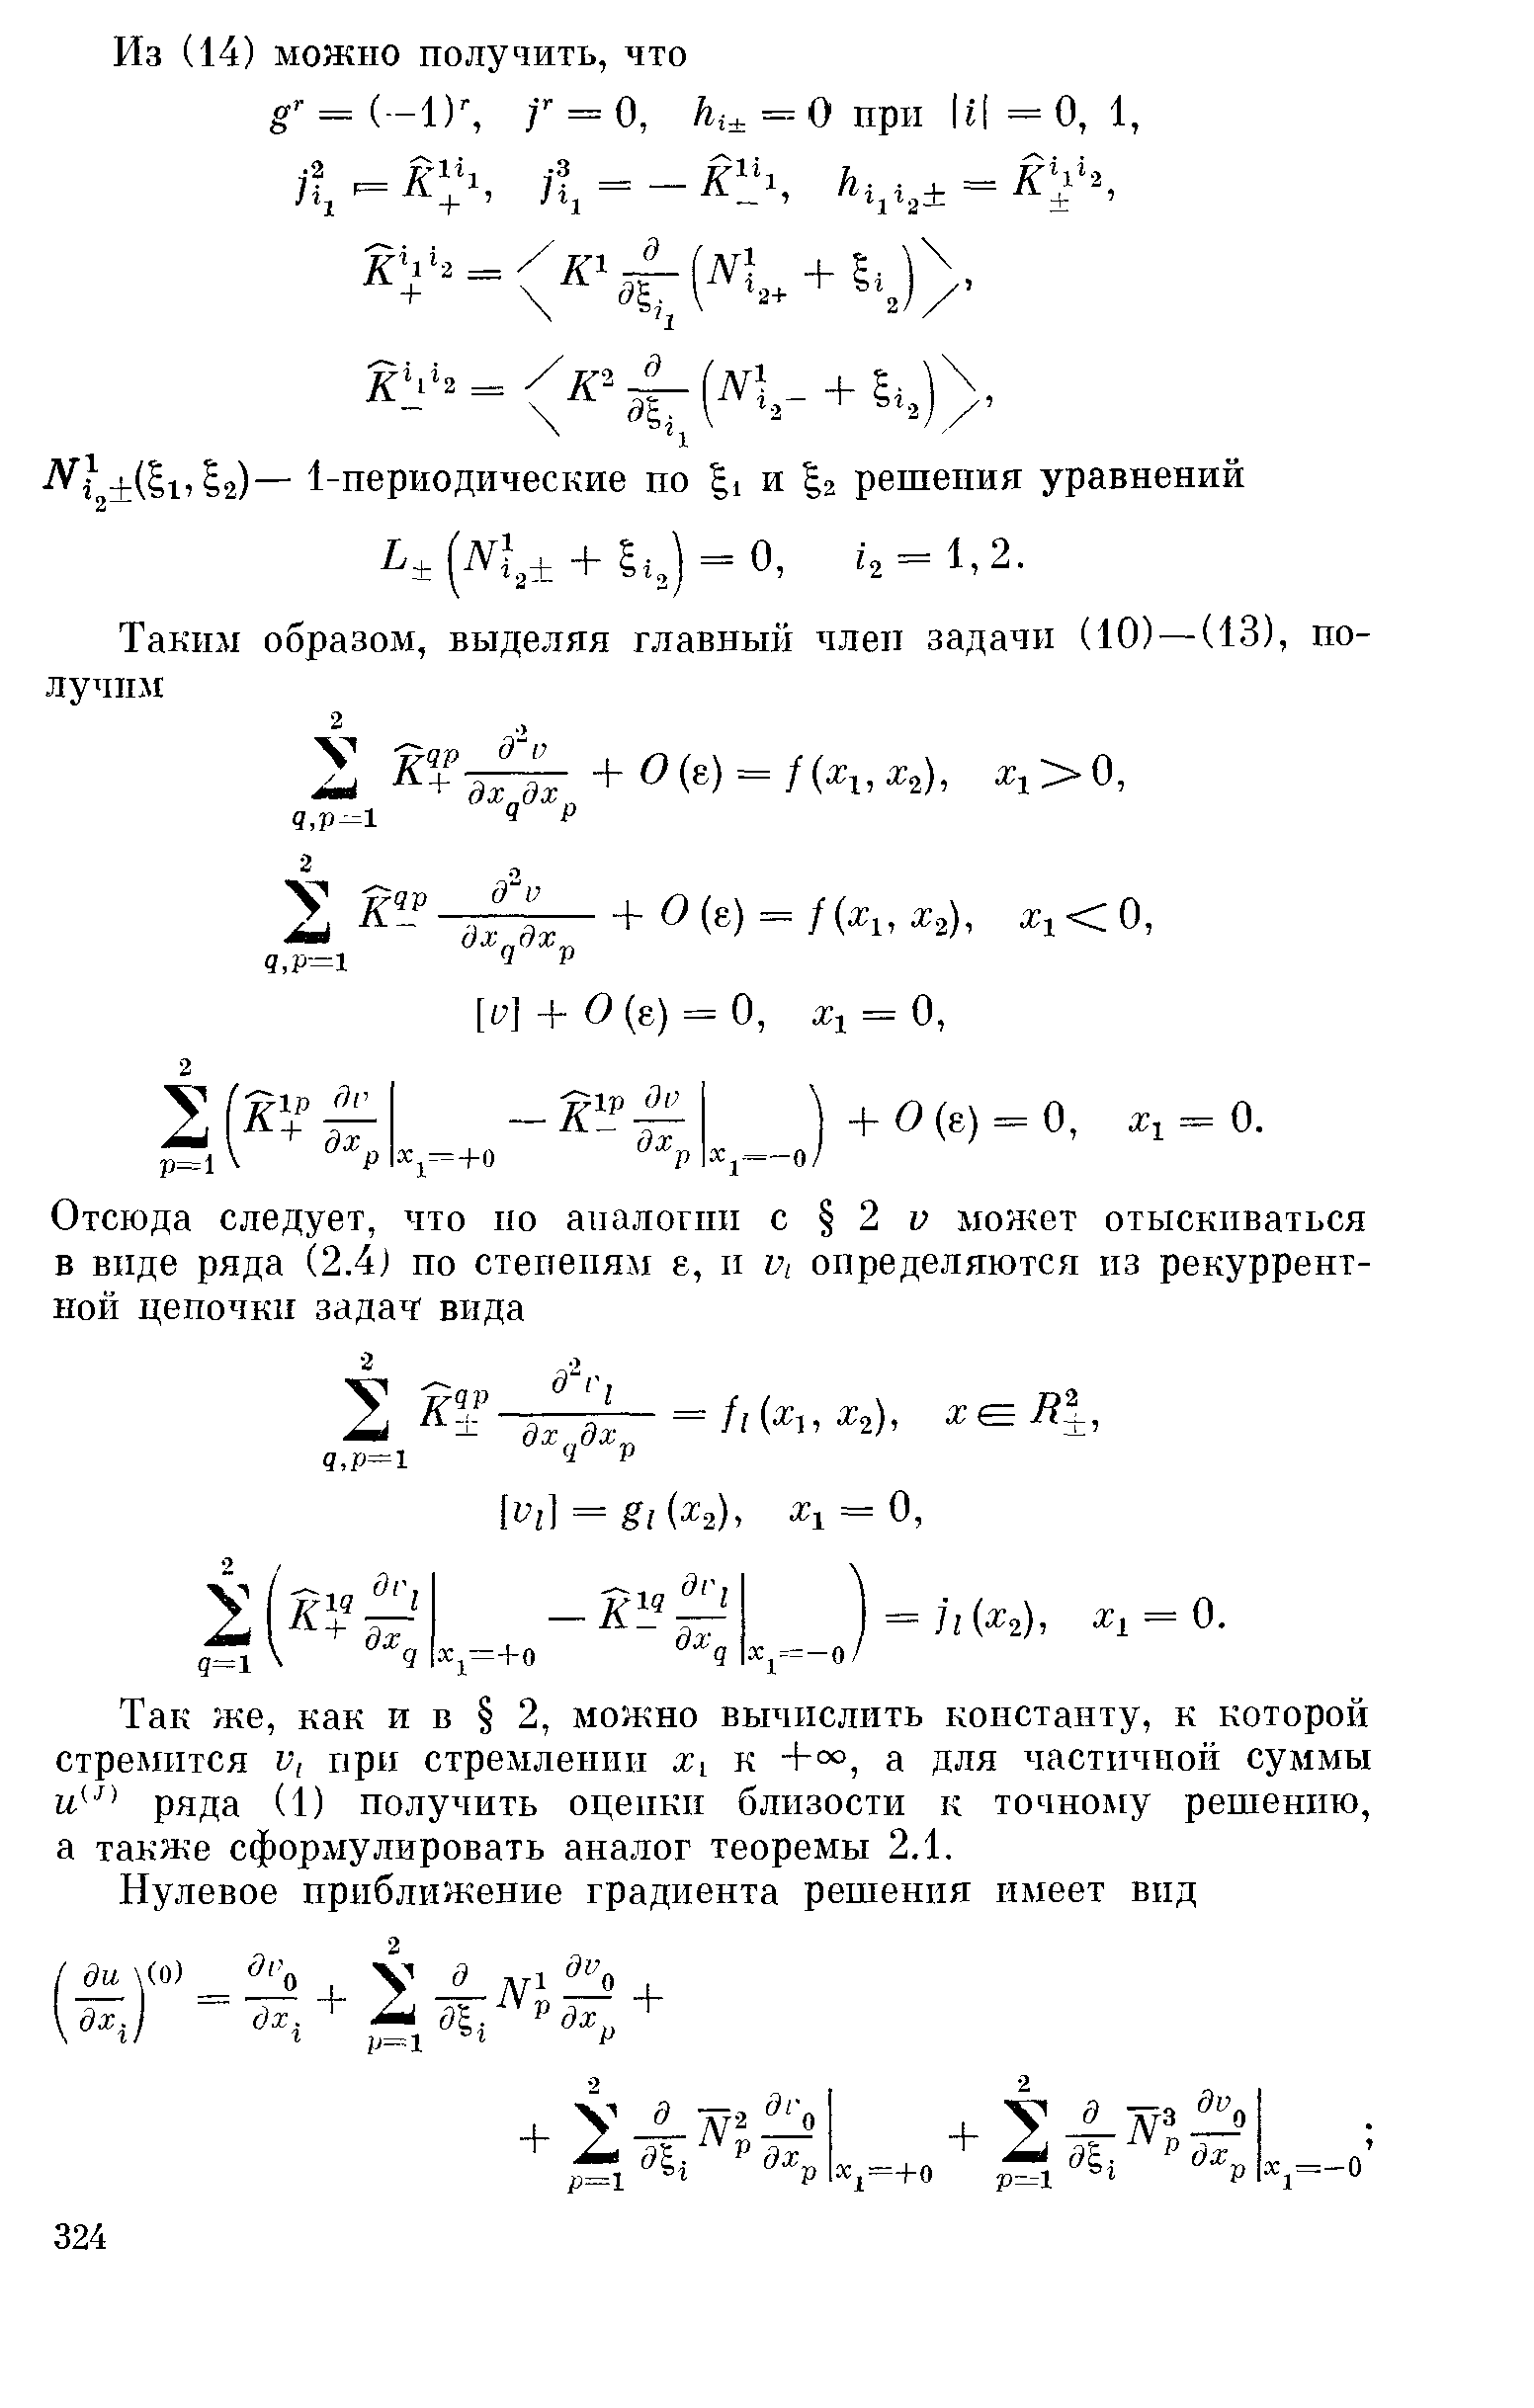 Так же, как и в 2, можно вычислить константу, к которой стремится V, прп стремлении Х1 к 4-°°, а для частичной суммы и ряда (1) получить оцепкп близости к точному решению, а также сформулировать аналог теоремы 2.1.